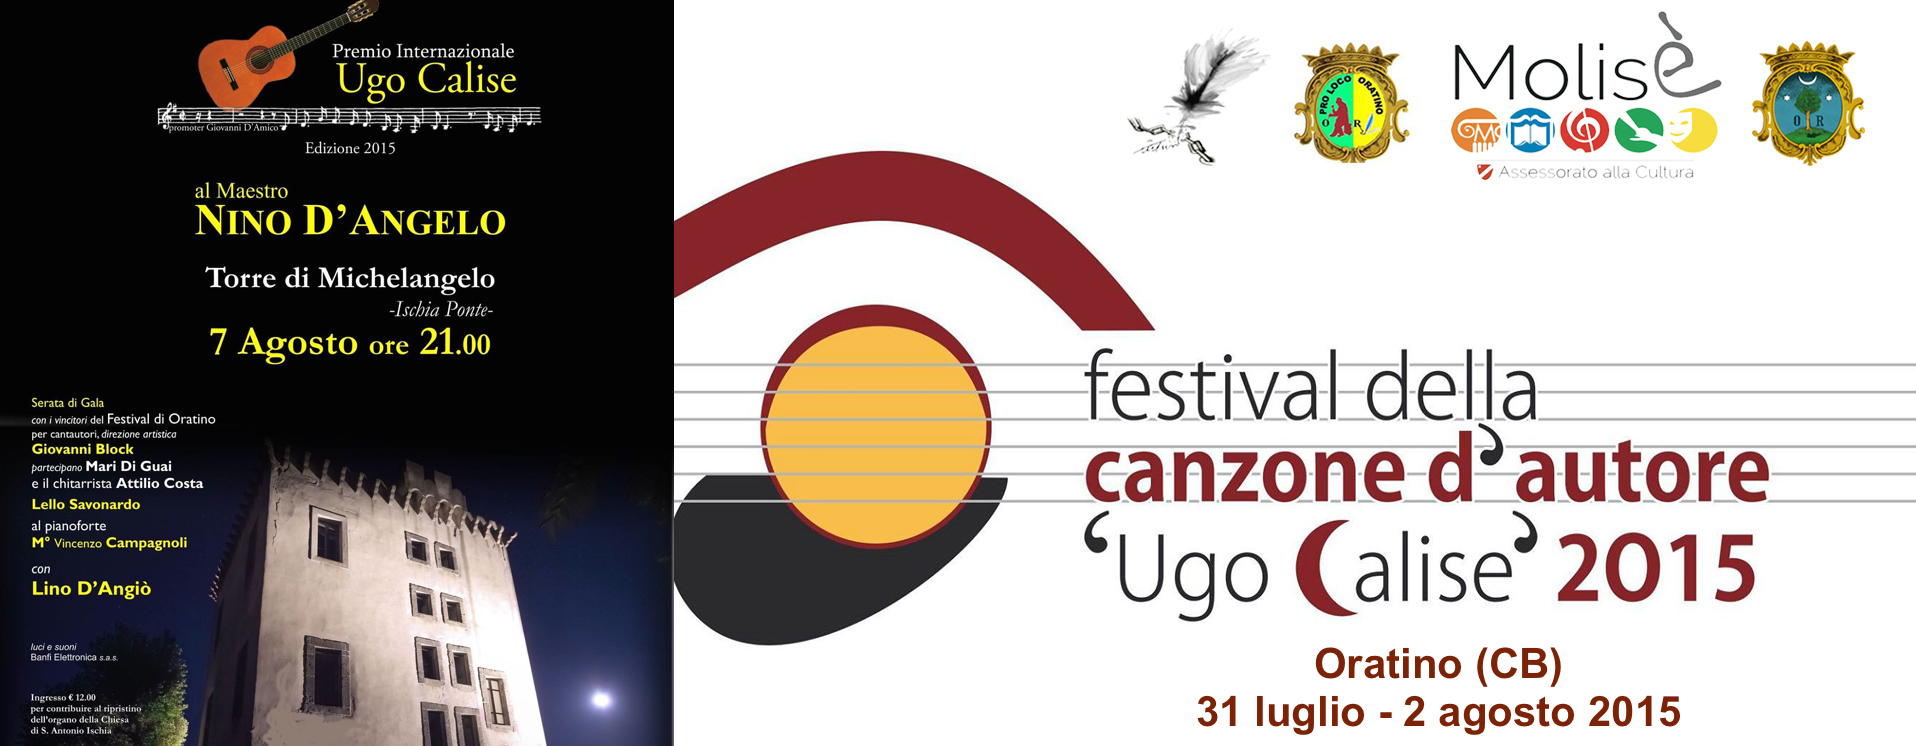 2015.07.22 - La memoria ed il futuro della musica napoletana in un doppio appuntamento dedicato ad Ugo Calise 4